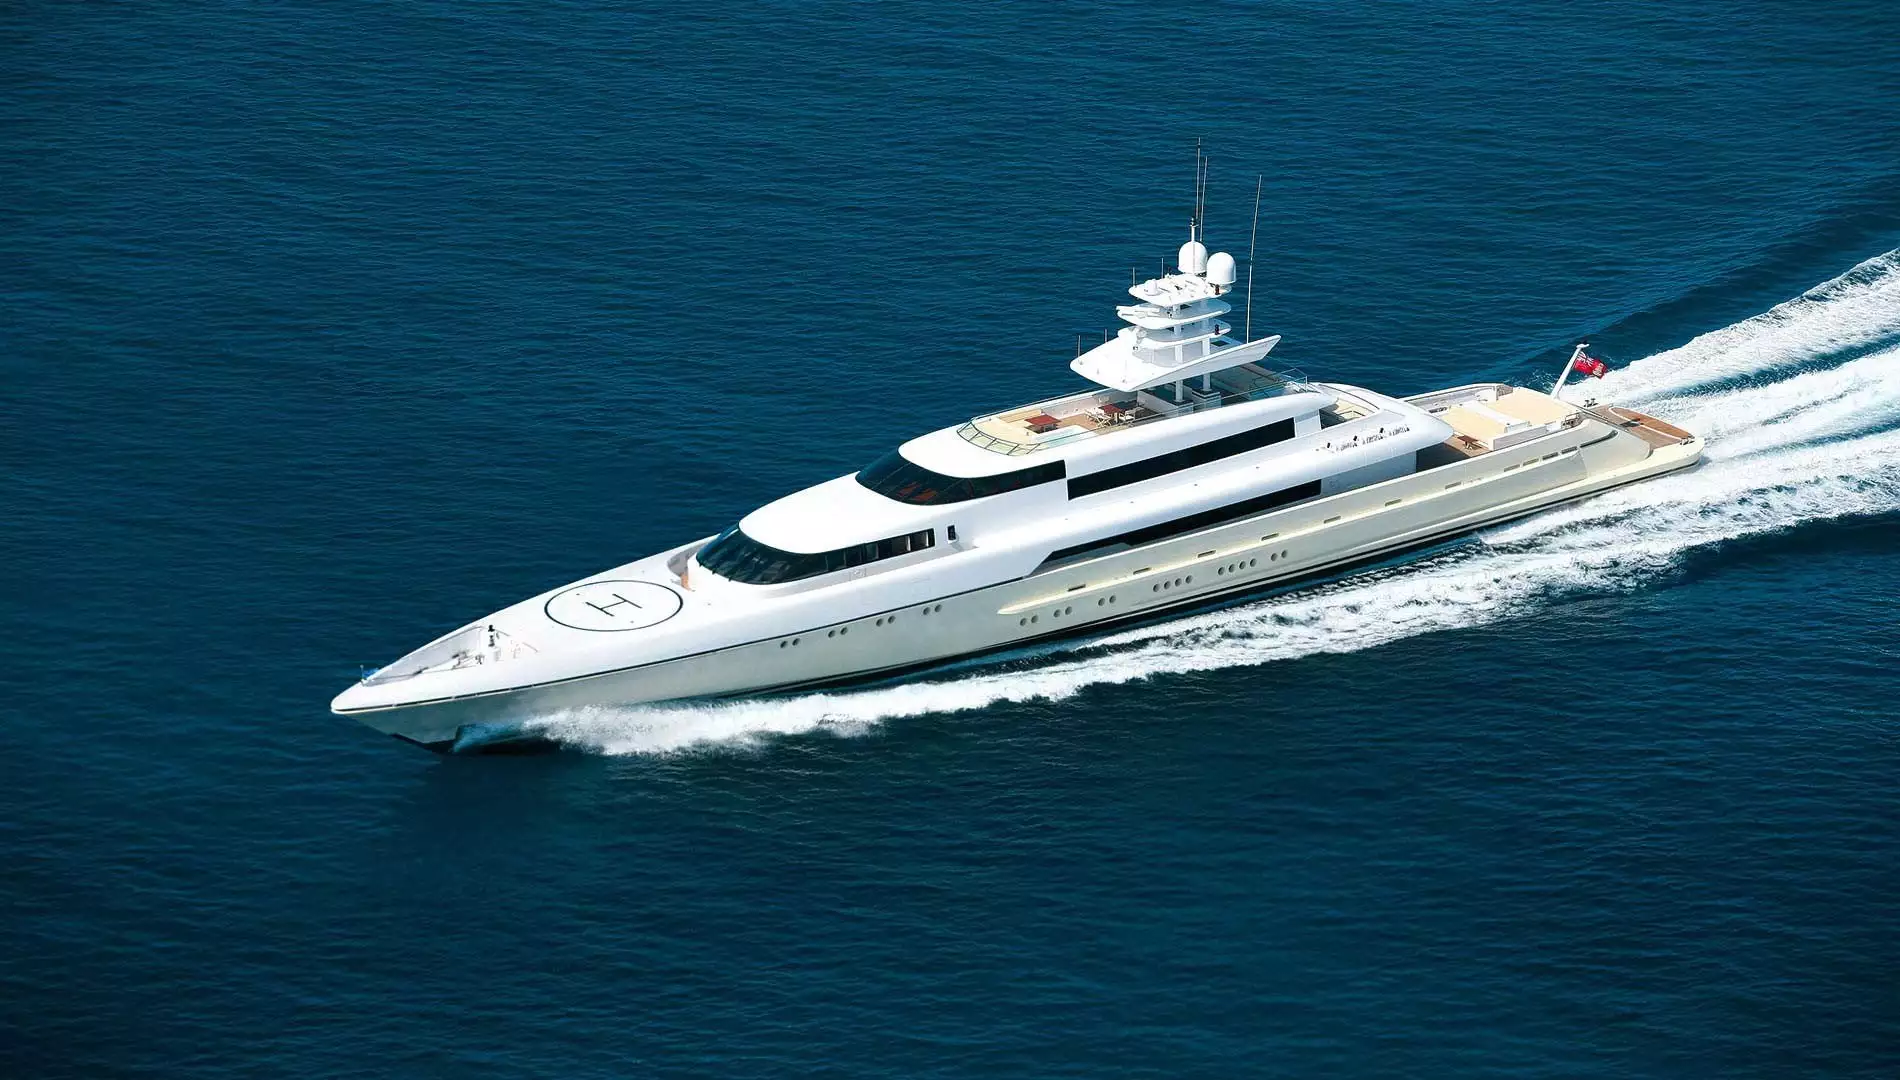 yacht Dragonfly - Silver Yachts - 2009 - Sergey Brin